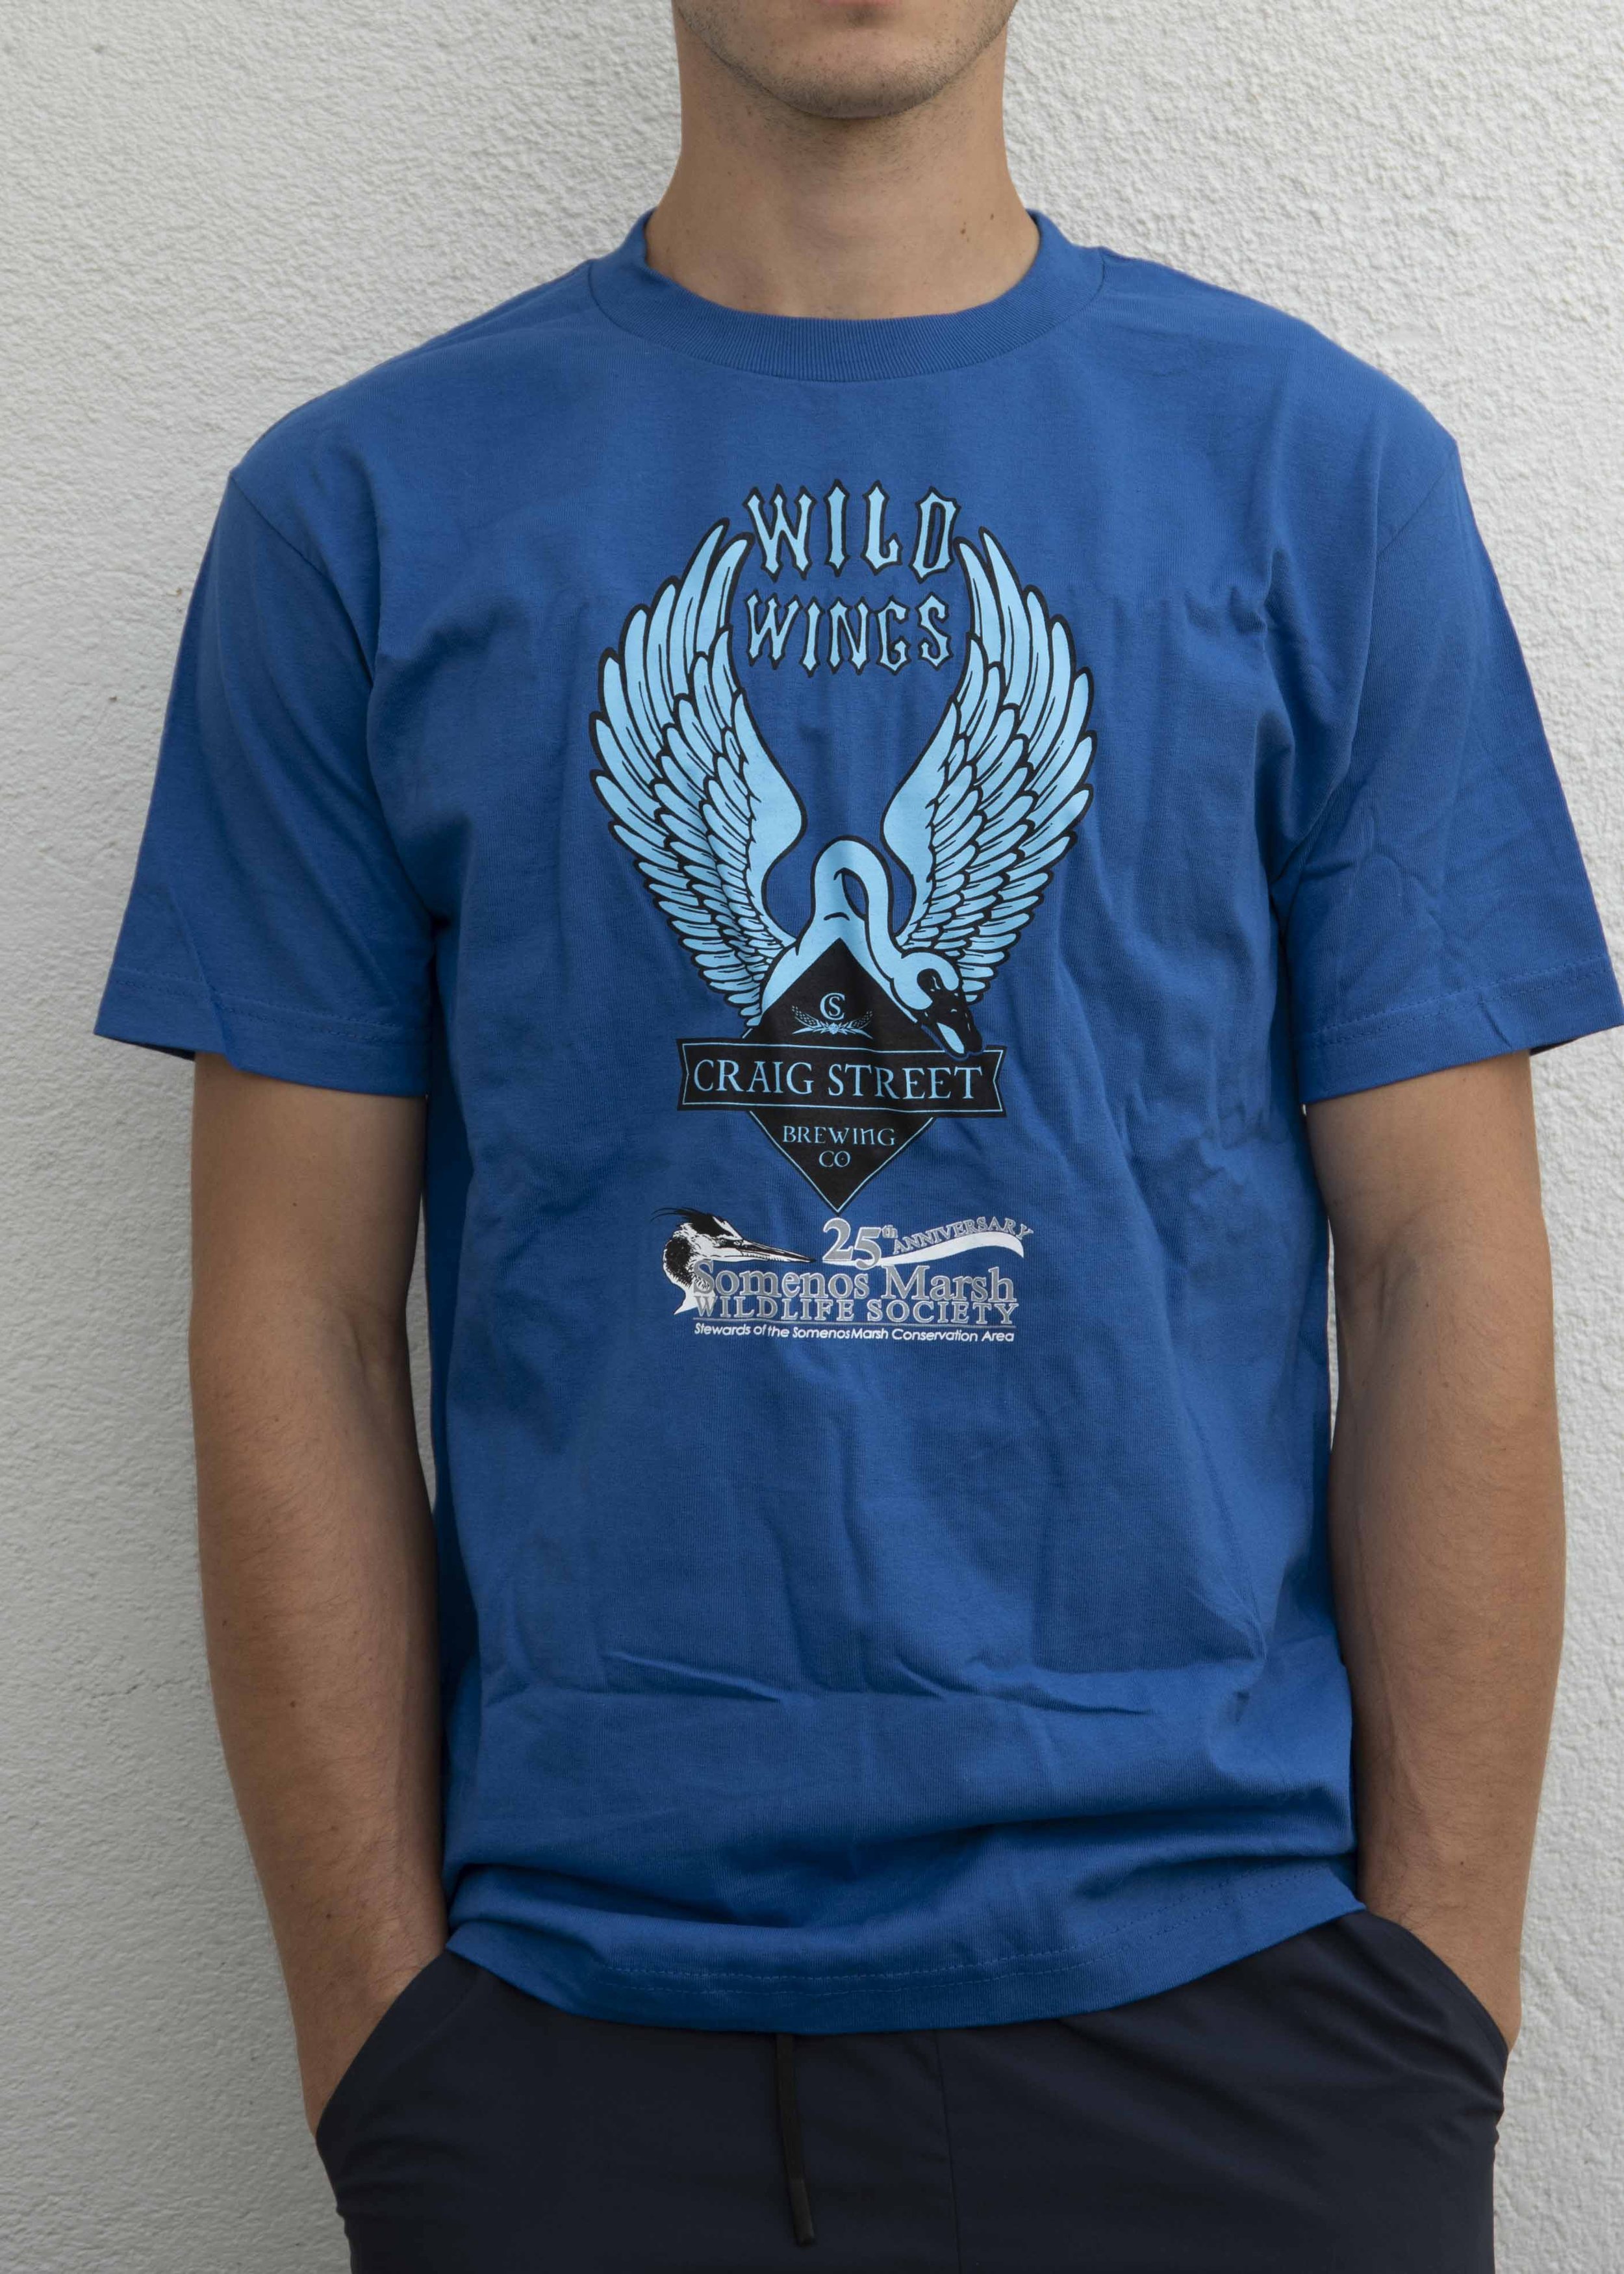 WildWings "Beer" Shirt $15